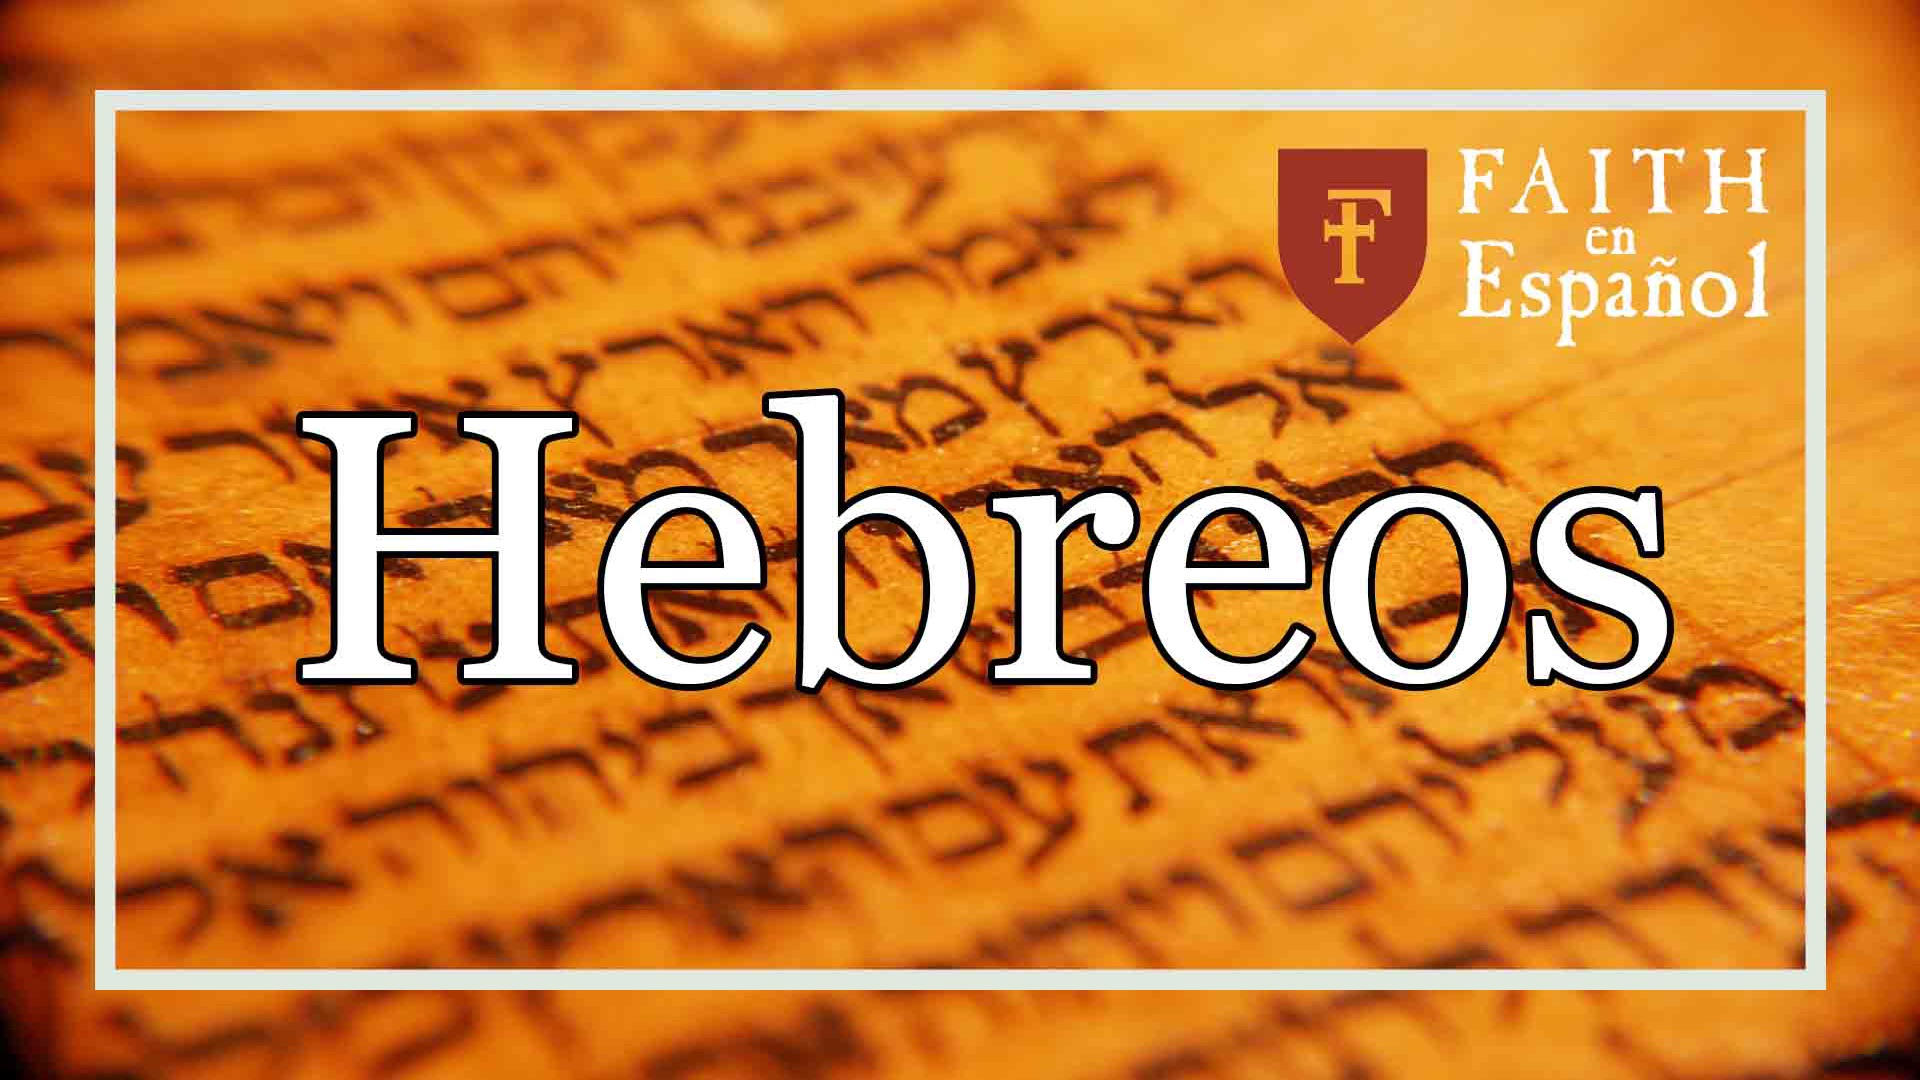 Viviendo las Promesas de Dios en Fe (Hebreos 11:8-10)